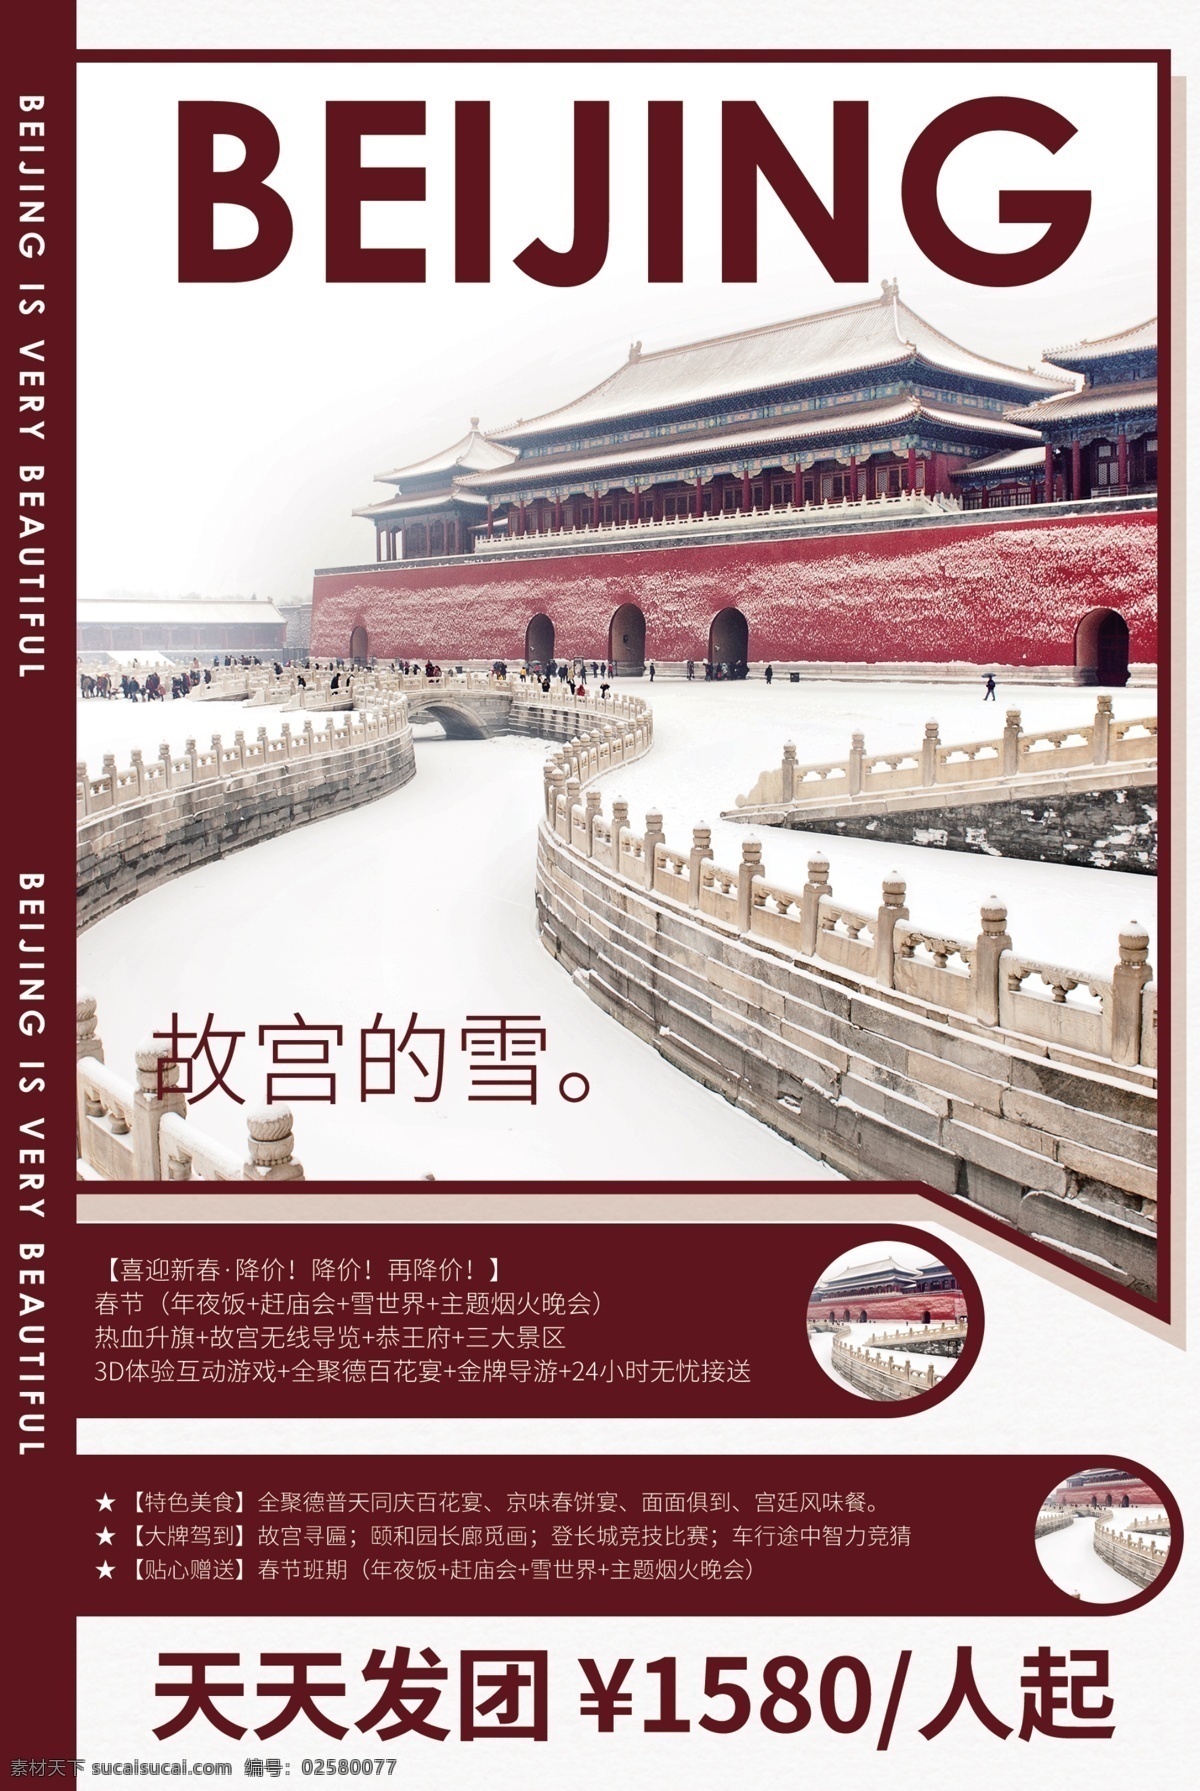 北京 旅游 旅行 活动 宣传海报 素材图片 宣传 海报